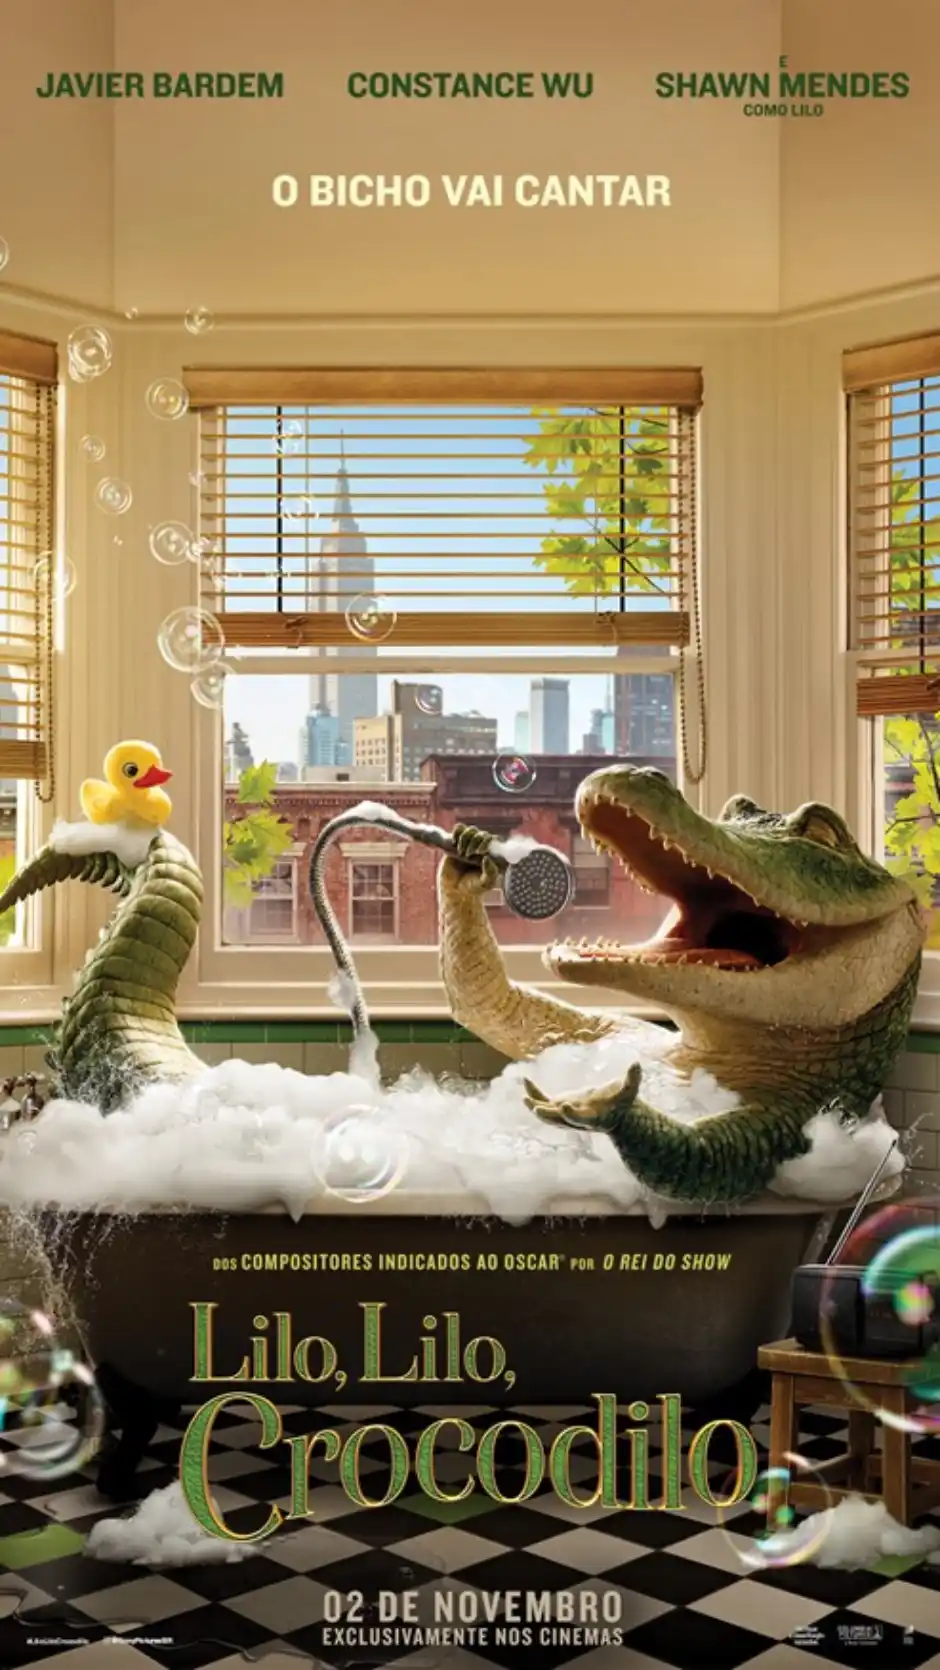 Mr. Cheney anuncia combo especial para o filme "Lilo, Lilo, Crocodilo!" em parceria com a Sony